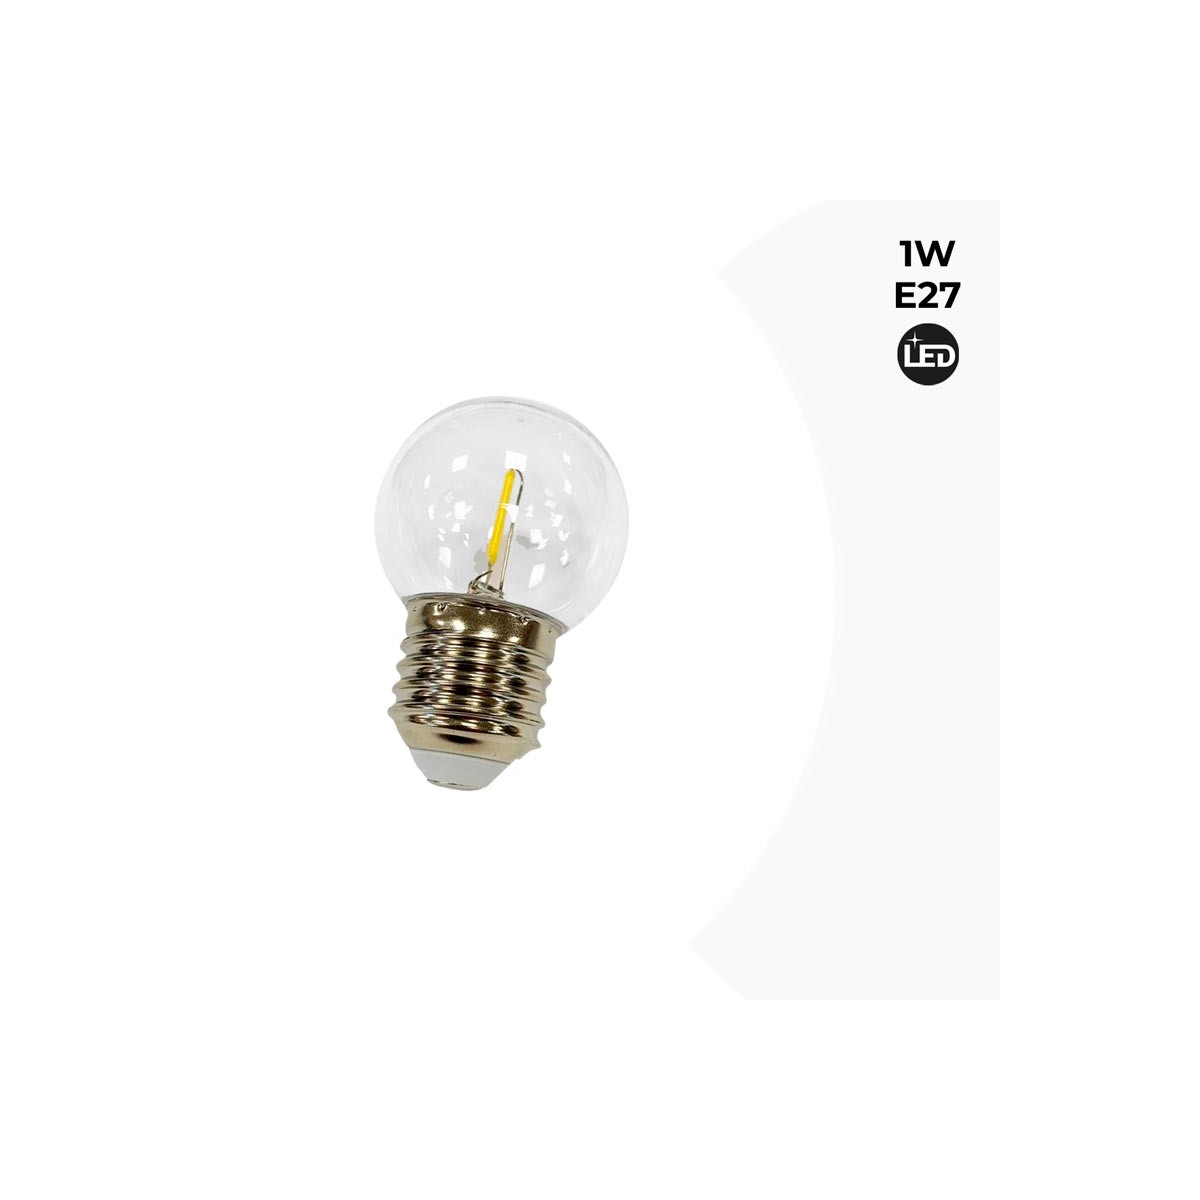 Lampadina decorativa a filamento LED 1W E27